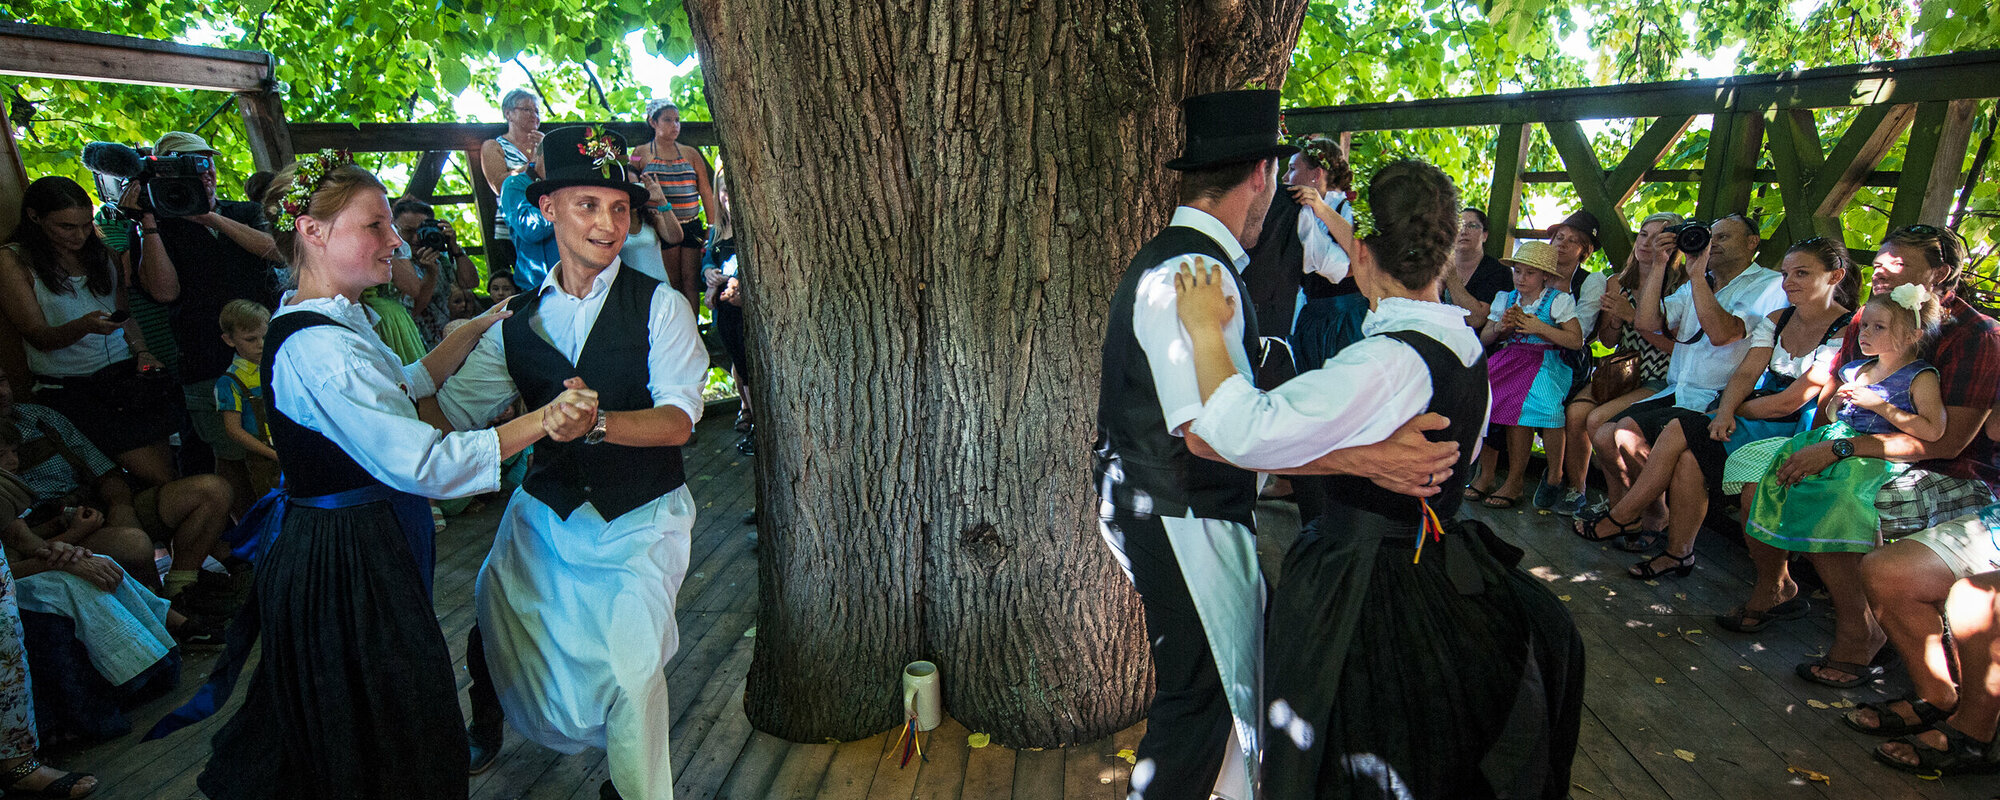 In Tracht gekleidete Paare tanzen in einer Linde um den Baum. Auf den Bänken drumherum sitzen Zuschauer.